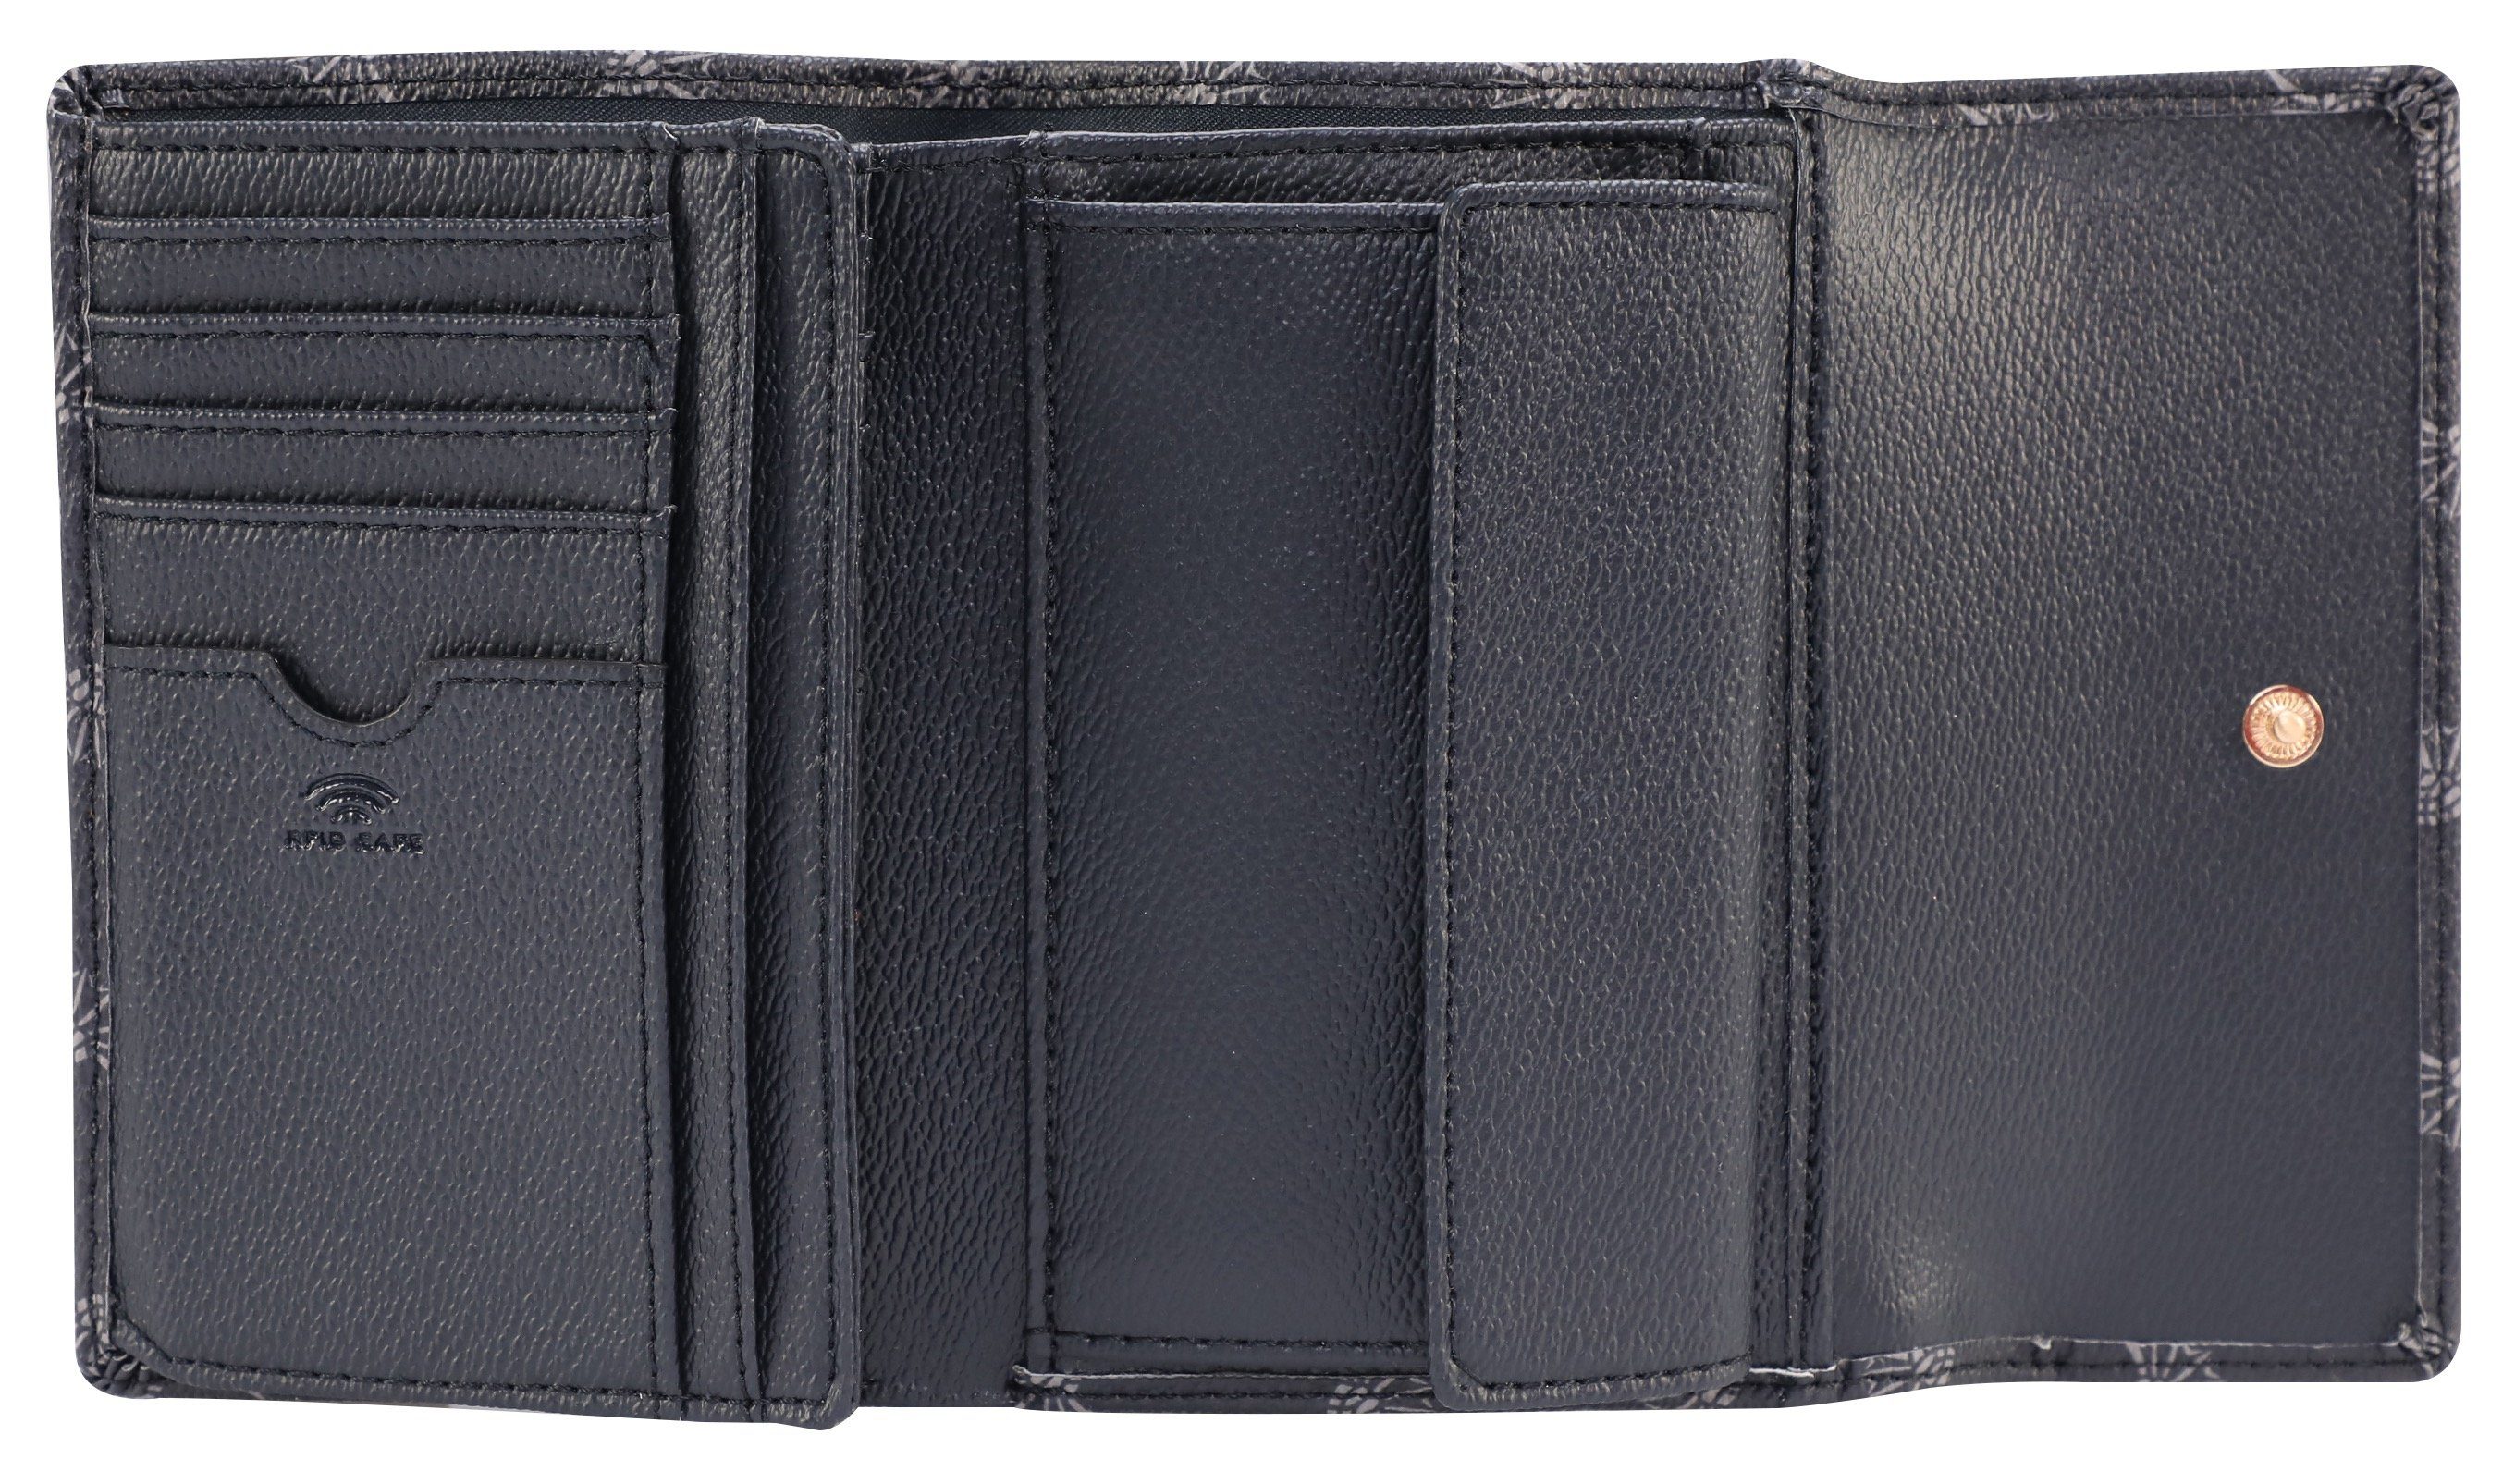 cortina im purse 1.0 cosma Joop! darkblue mh10f, praktischen Geldbörse Format